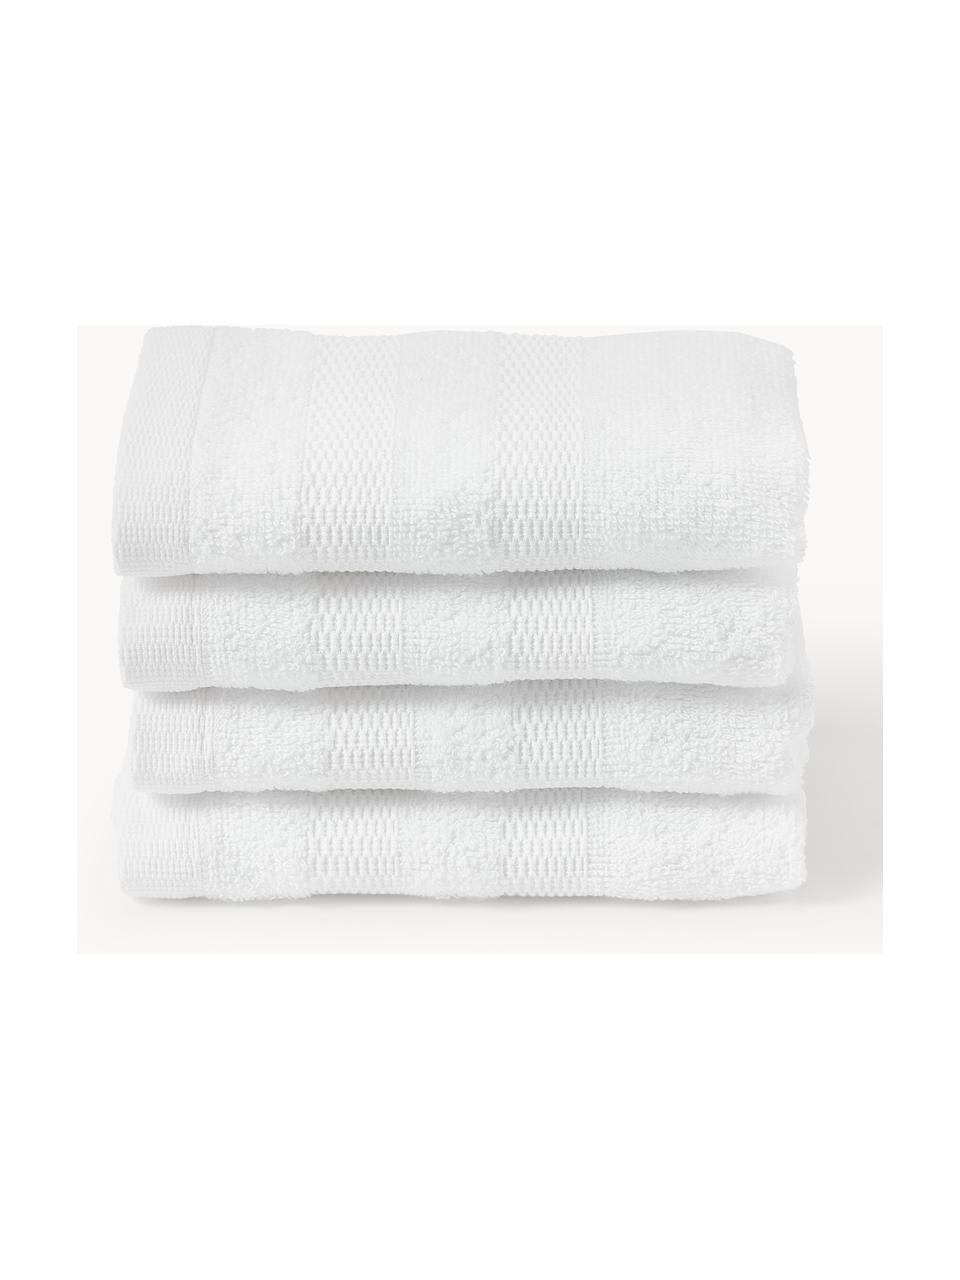 Ręcznik dla gości z bawełny Camila, 4 szt., Biały, Ręcznik dla gości, S 30 x D 50 cm